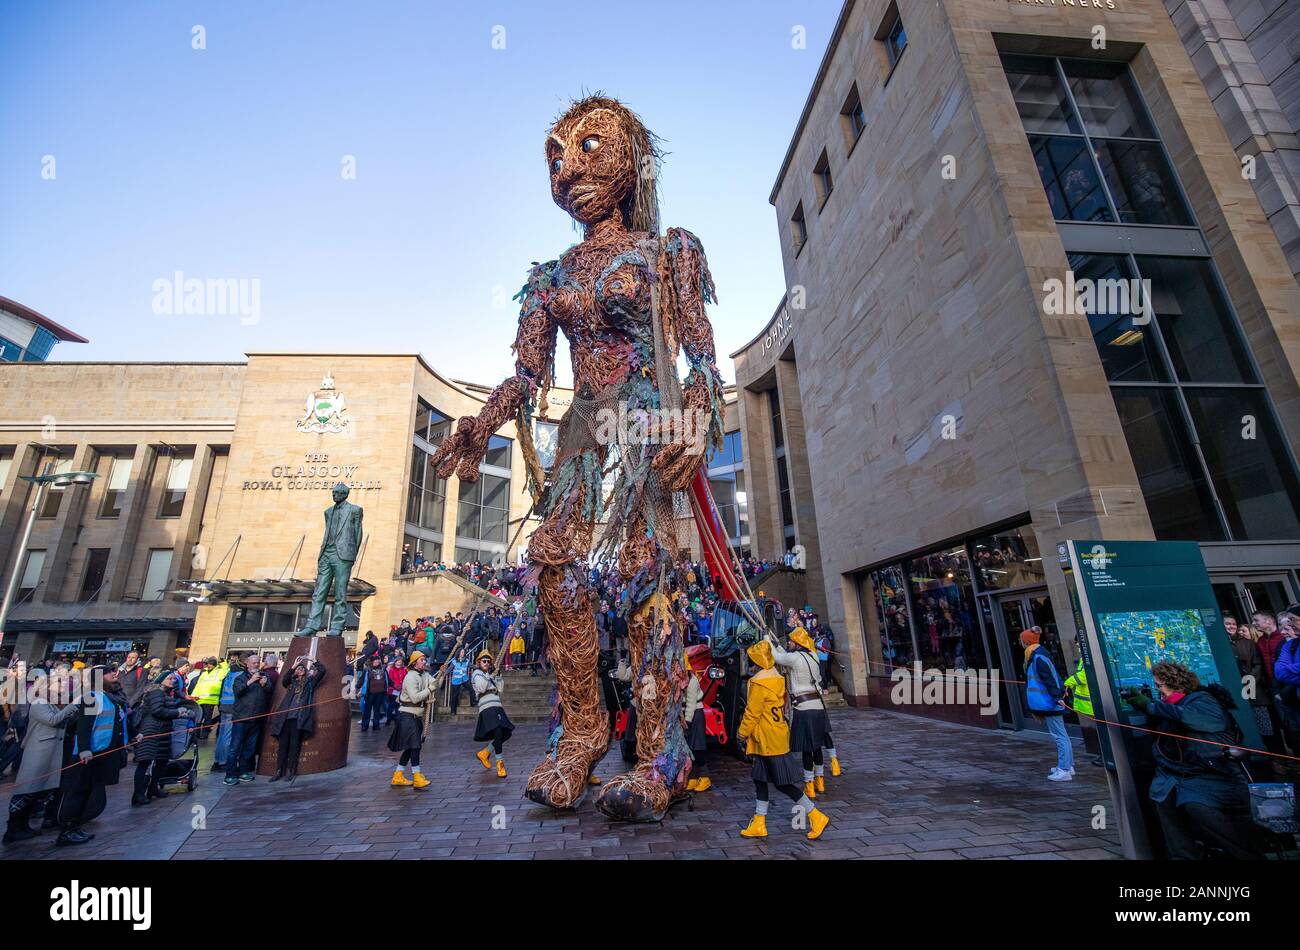 La plus importante de l'Écosse, une marionnette à dix mètres de haut de la déesse de la mer appelé tempête, faits entièrement de matériaux recyclés, de marcher dans le cadre de Glasgow Celtic Connections 2020. Banque D'Images